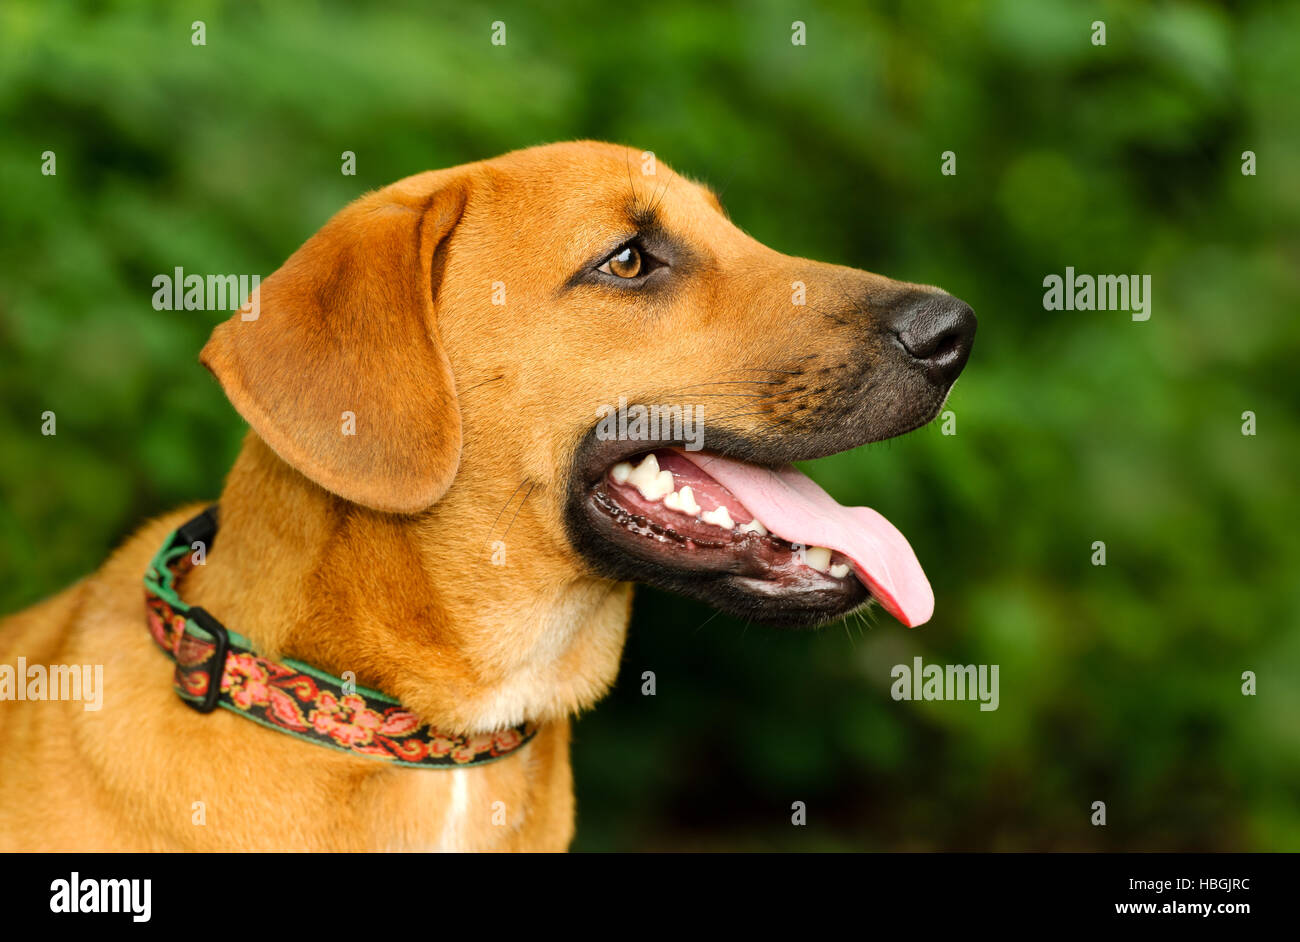 Glücklicher Hund ist eine Nahaufnahme eines eifrigen aufgeregt große Welpen Hund mit seiner Zunge hing aus seinem Mund und einen glücklichen Blick auf seinem Gesicht. Stockfoto